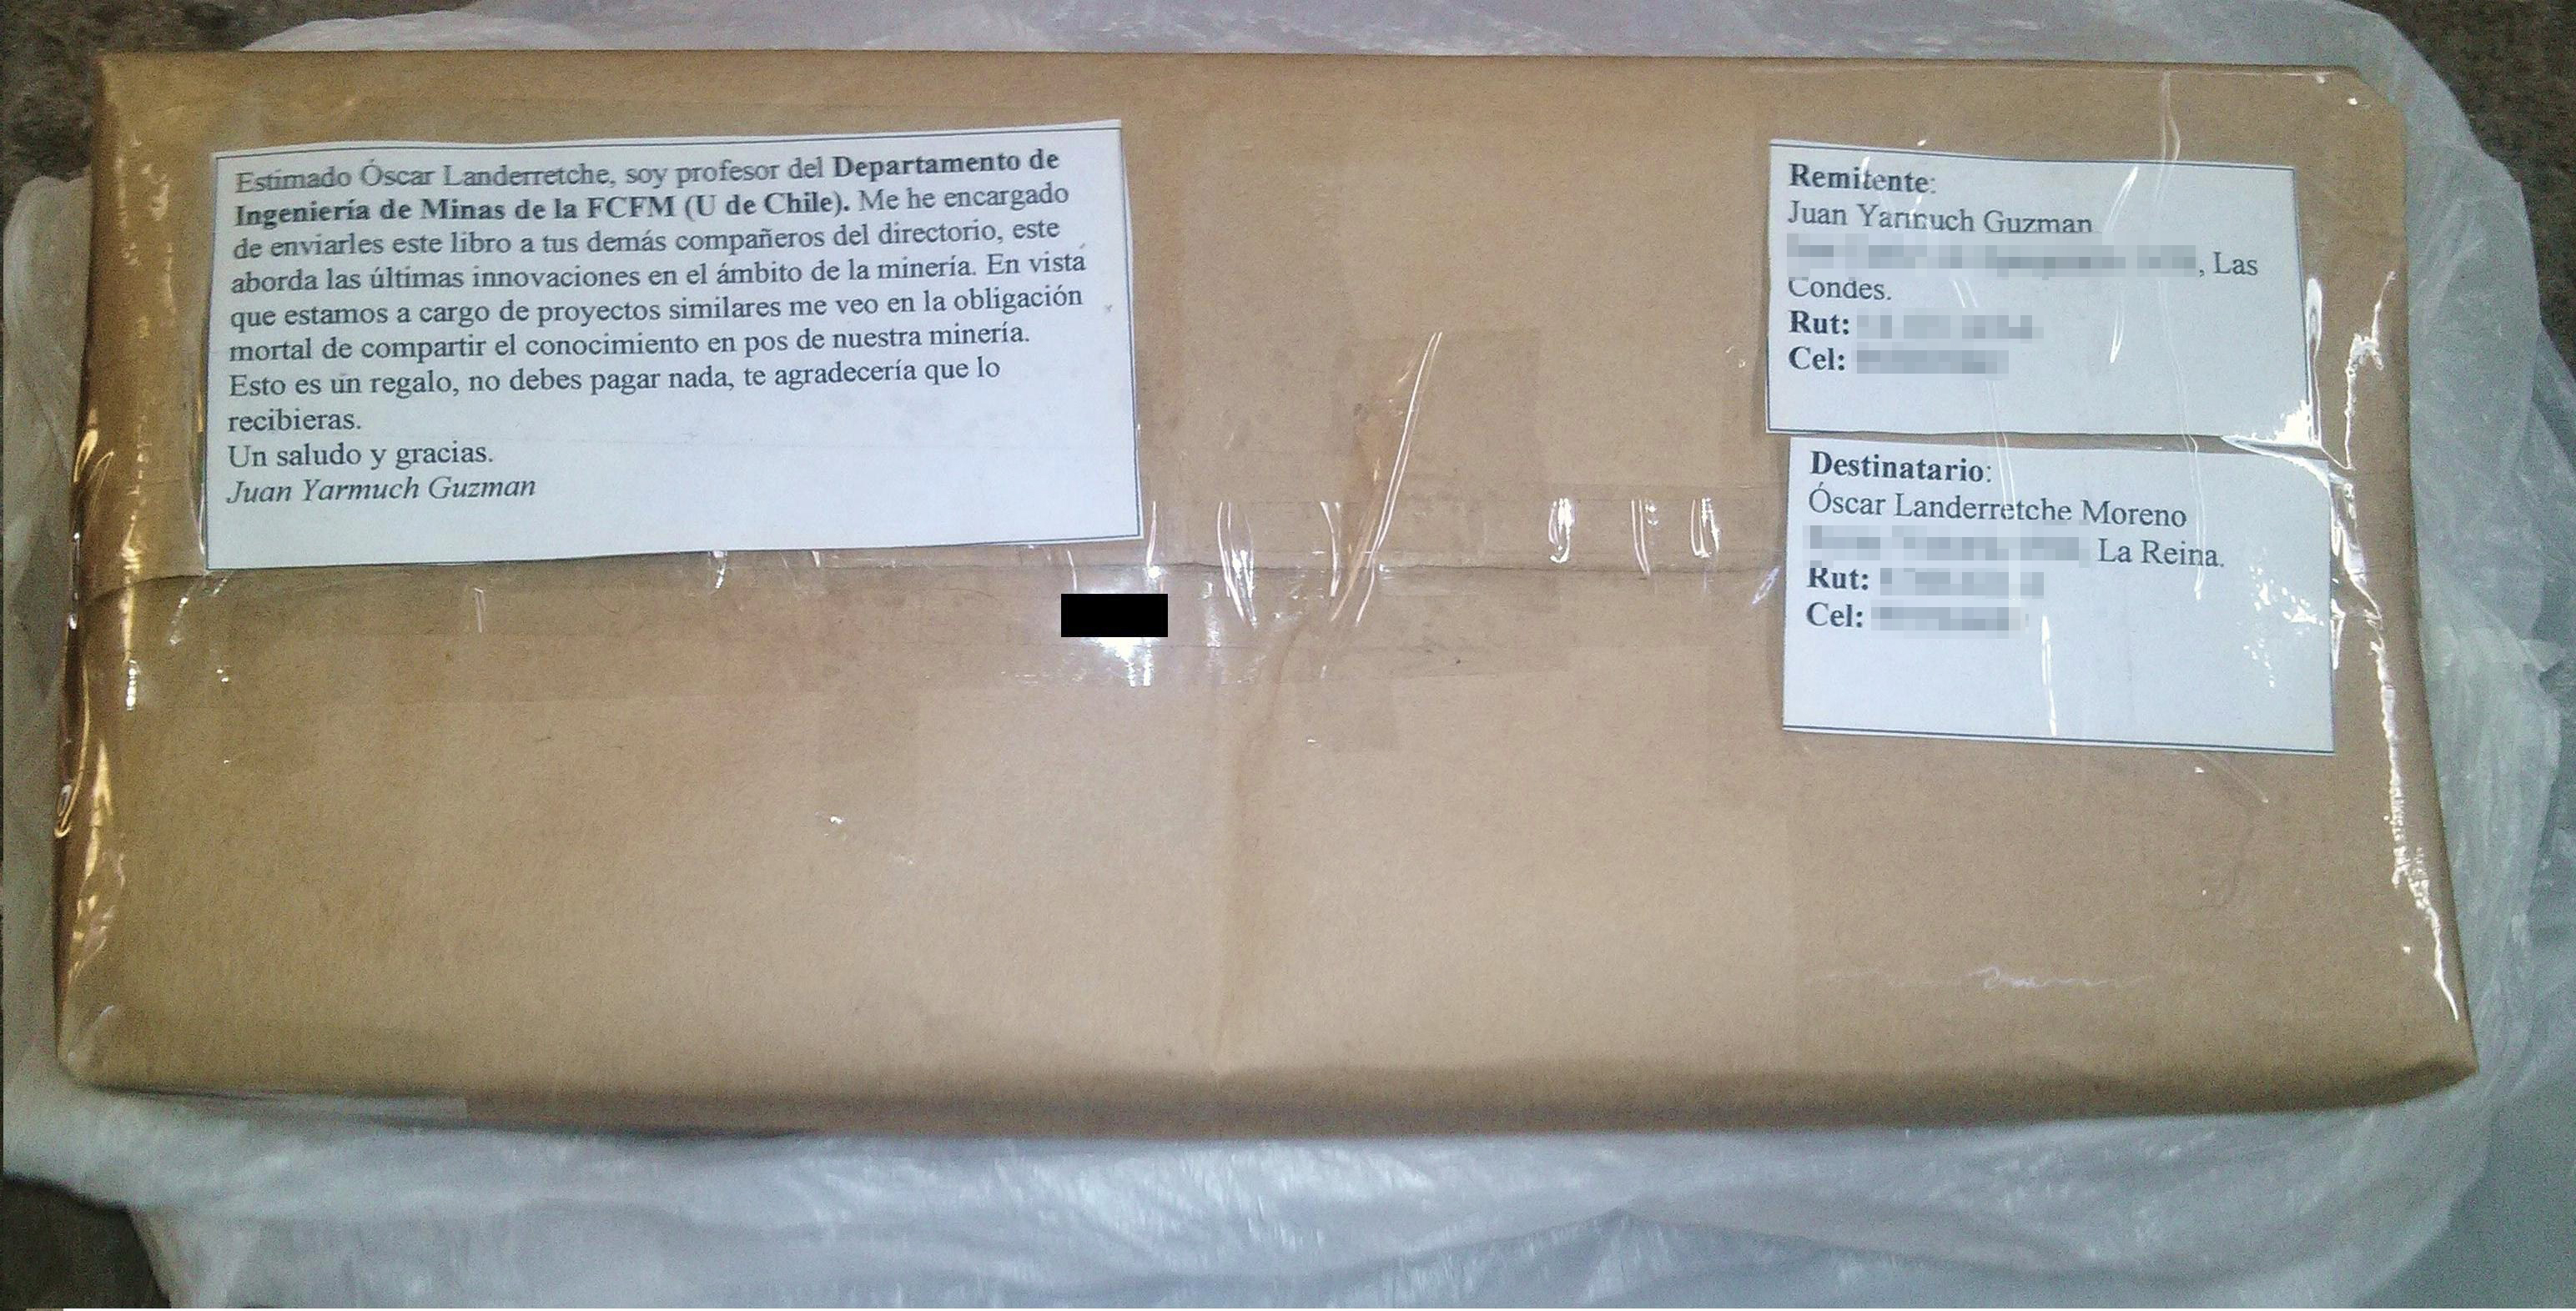 Supuesto paquete bomba enviado a Landerretche (Datos personales ocultados por BBCL)